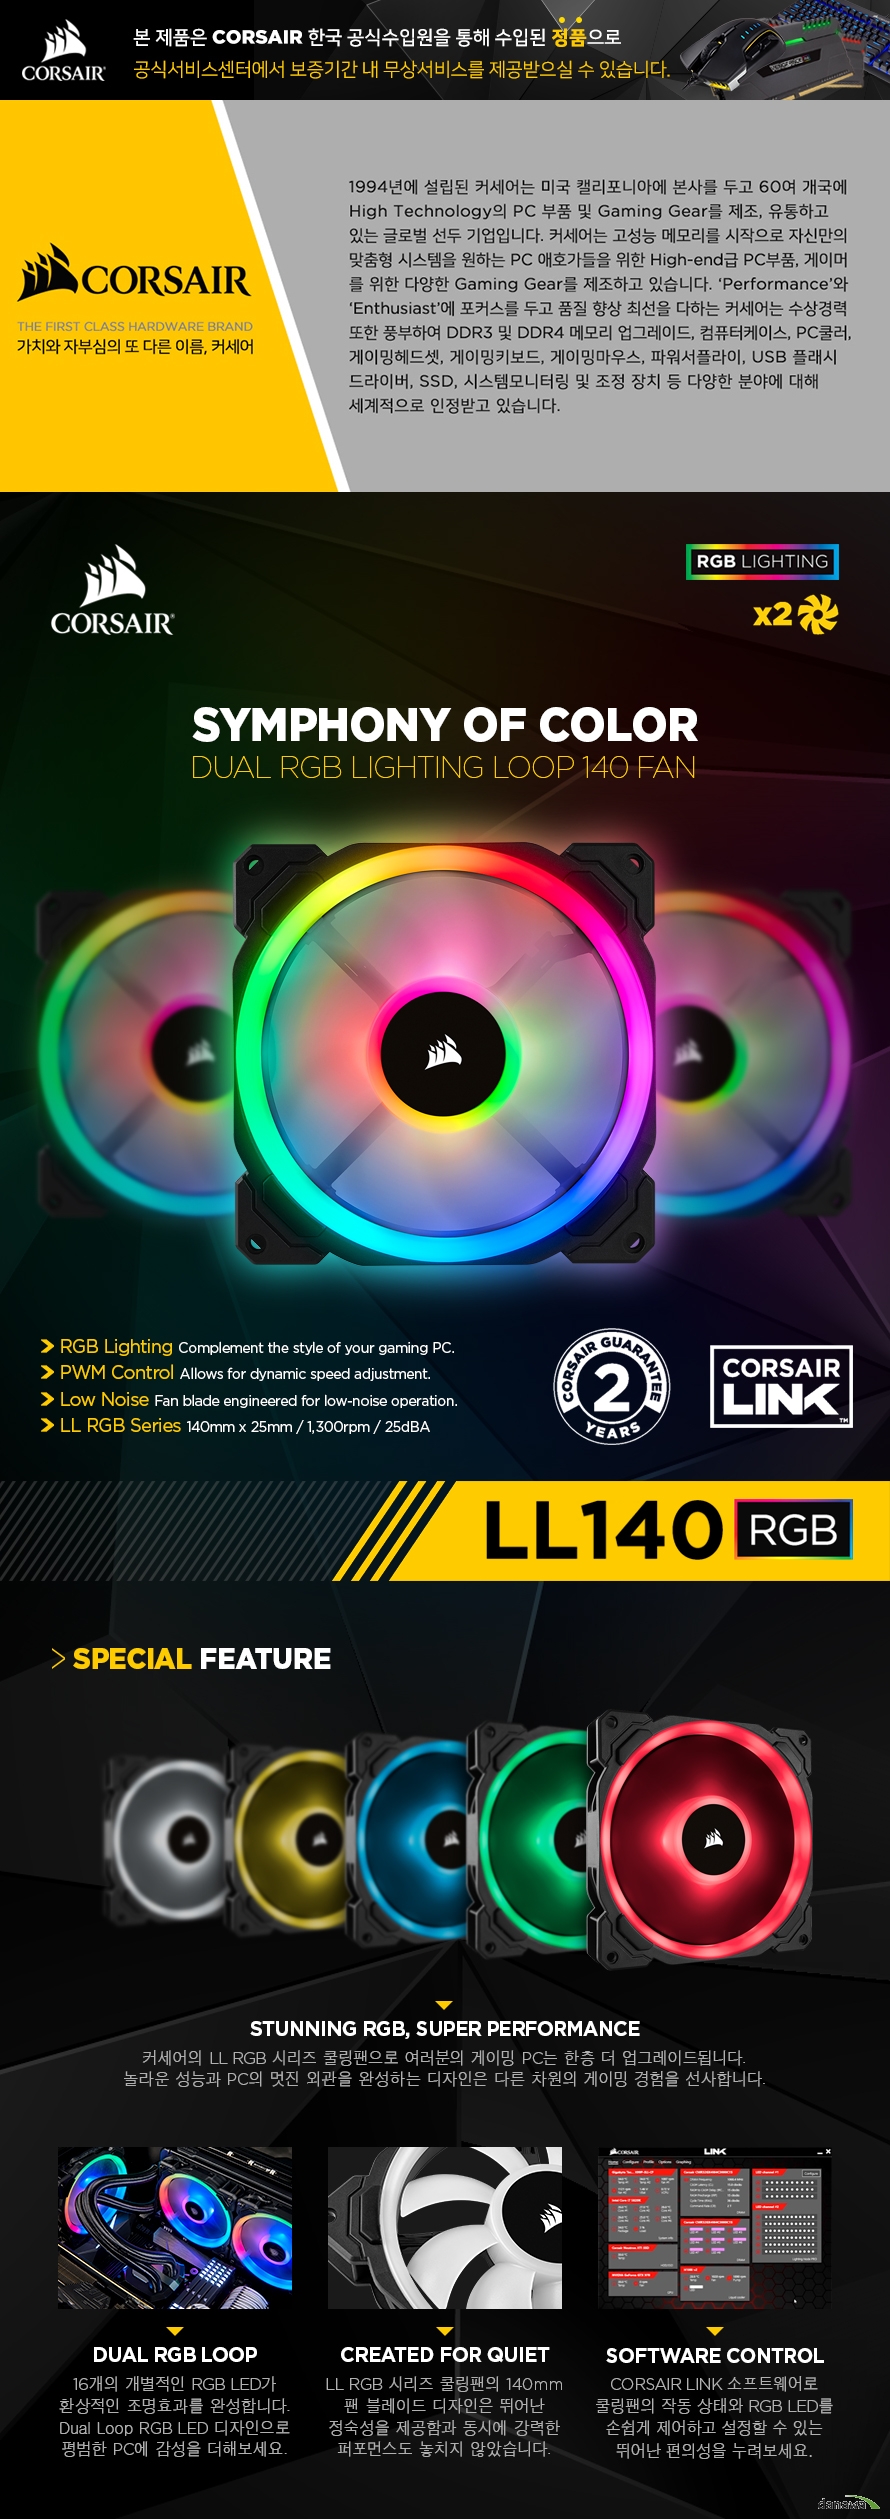 CORSAIR LL 140 RGB 2 pack 커세어의 LL RGB 시리즈 쿨링팬으로 여러분의 게이밍 PC는 한층 더 업그레이드됩니다. 놀라운 성능과 PC의 멋진 외관을 완성하는 디자인은 다른 차원의 게이밍 경험을 선사합니다.